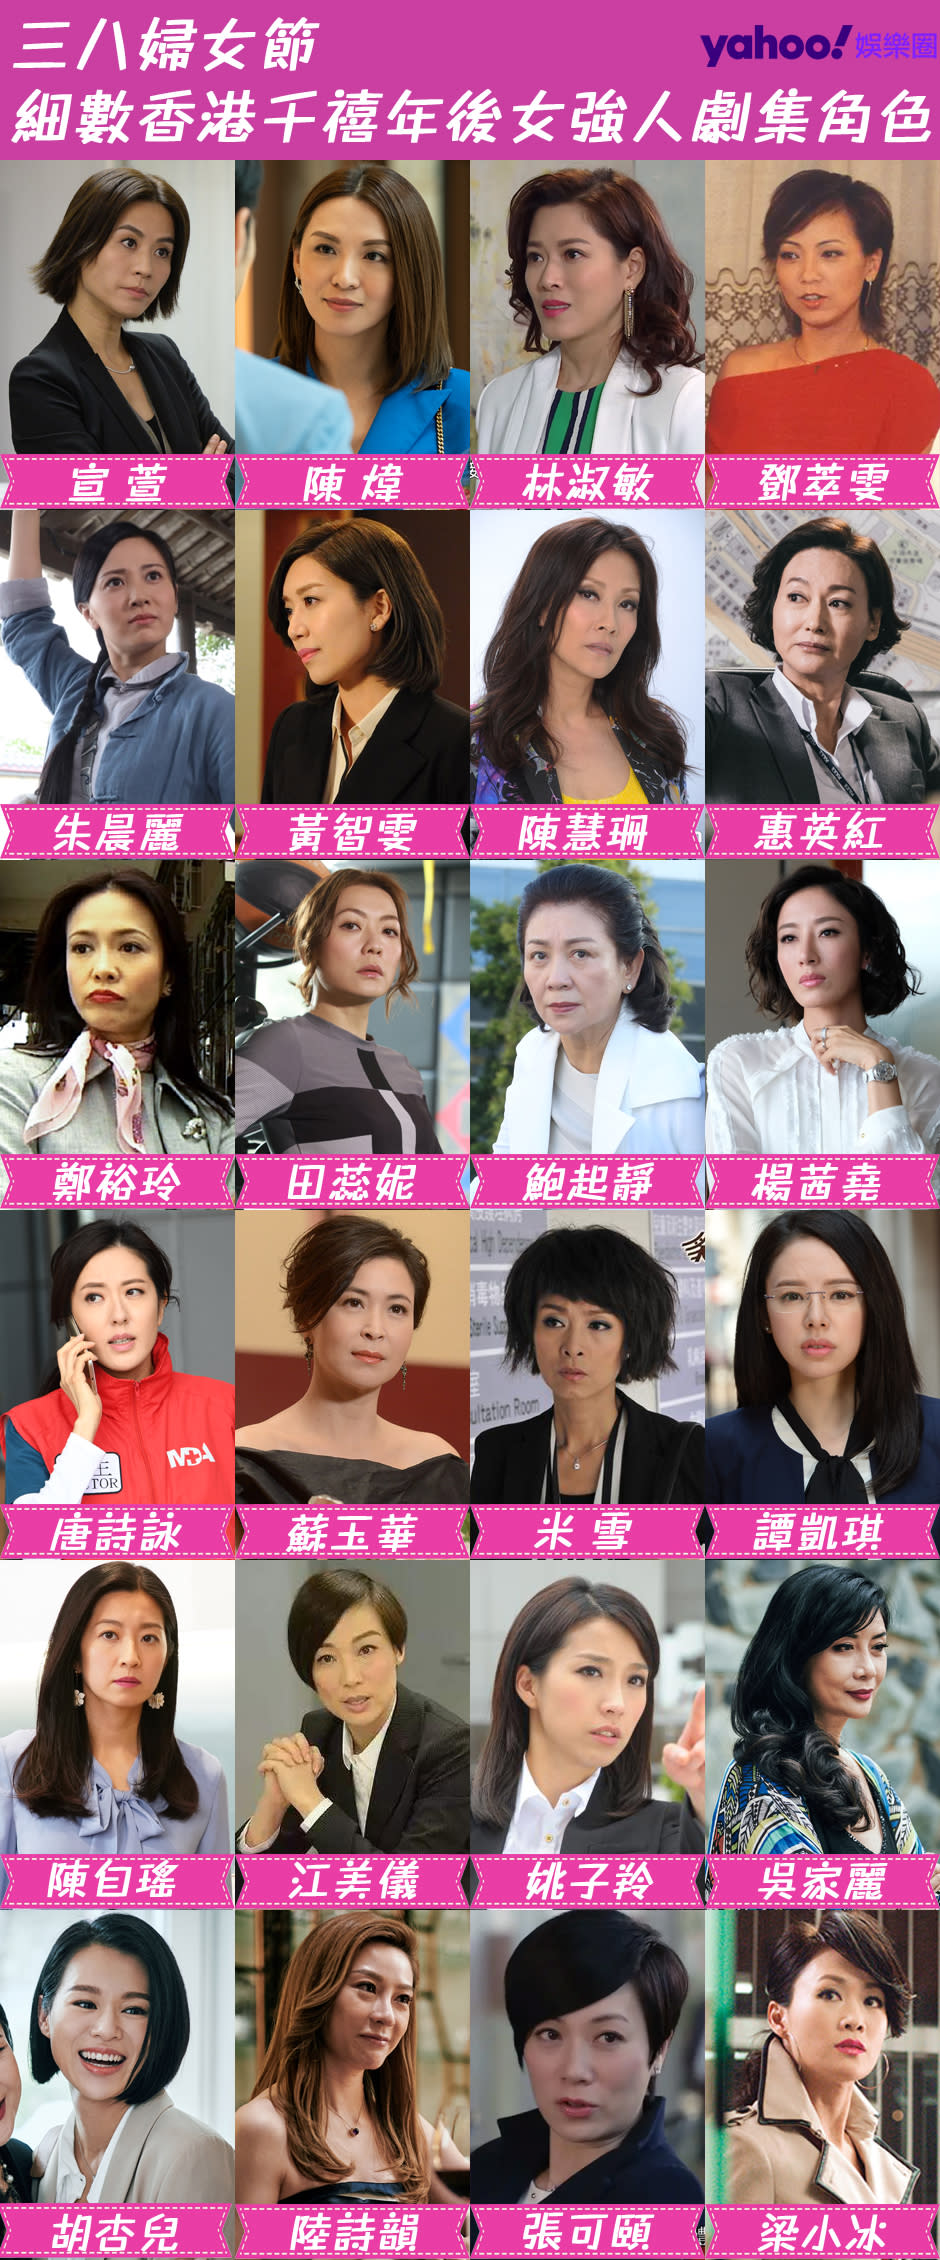 三八婦女節 細數香港千禧年後女強人劇集角色